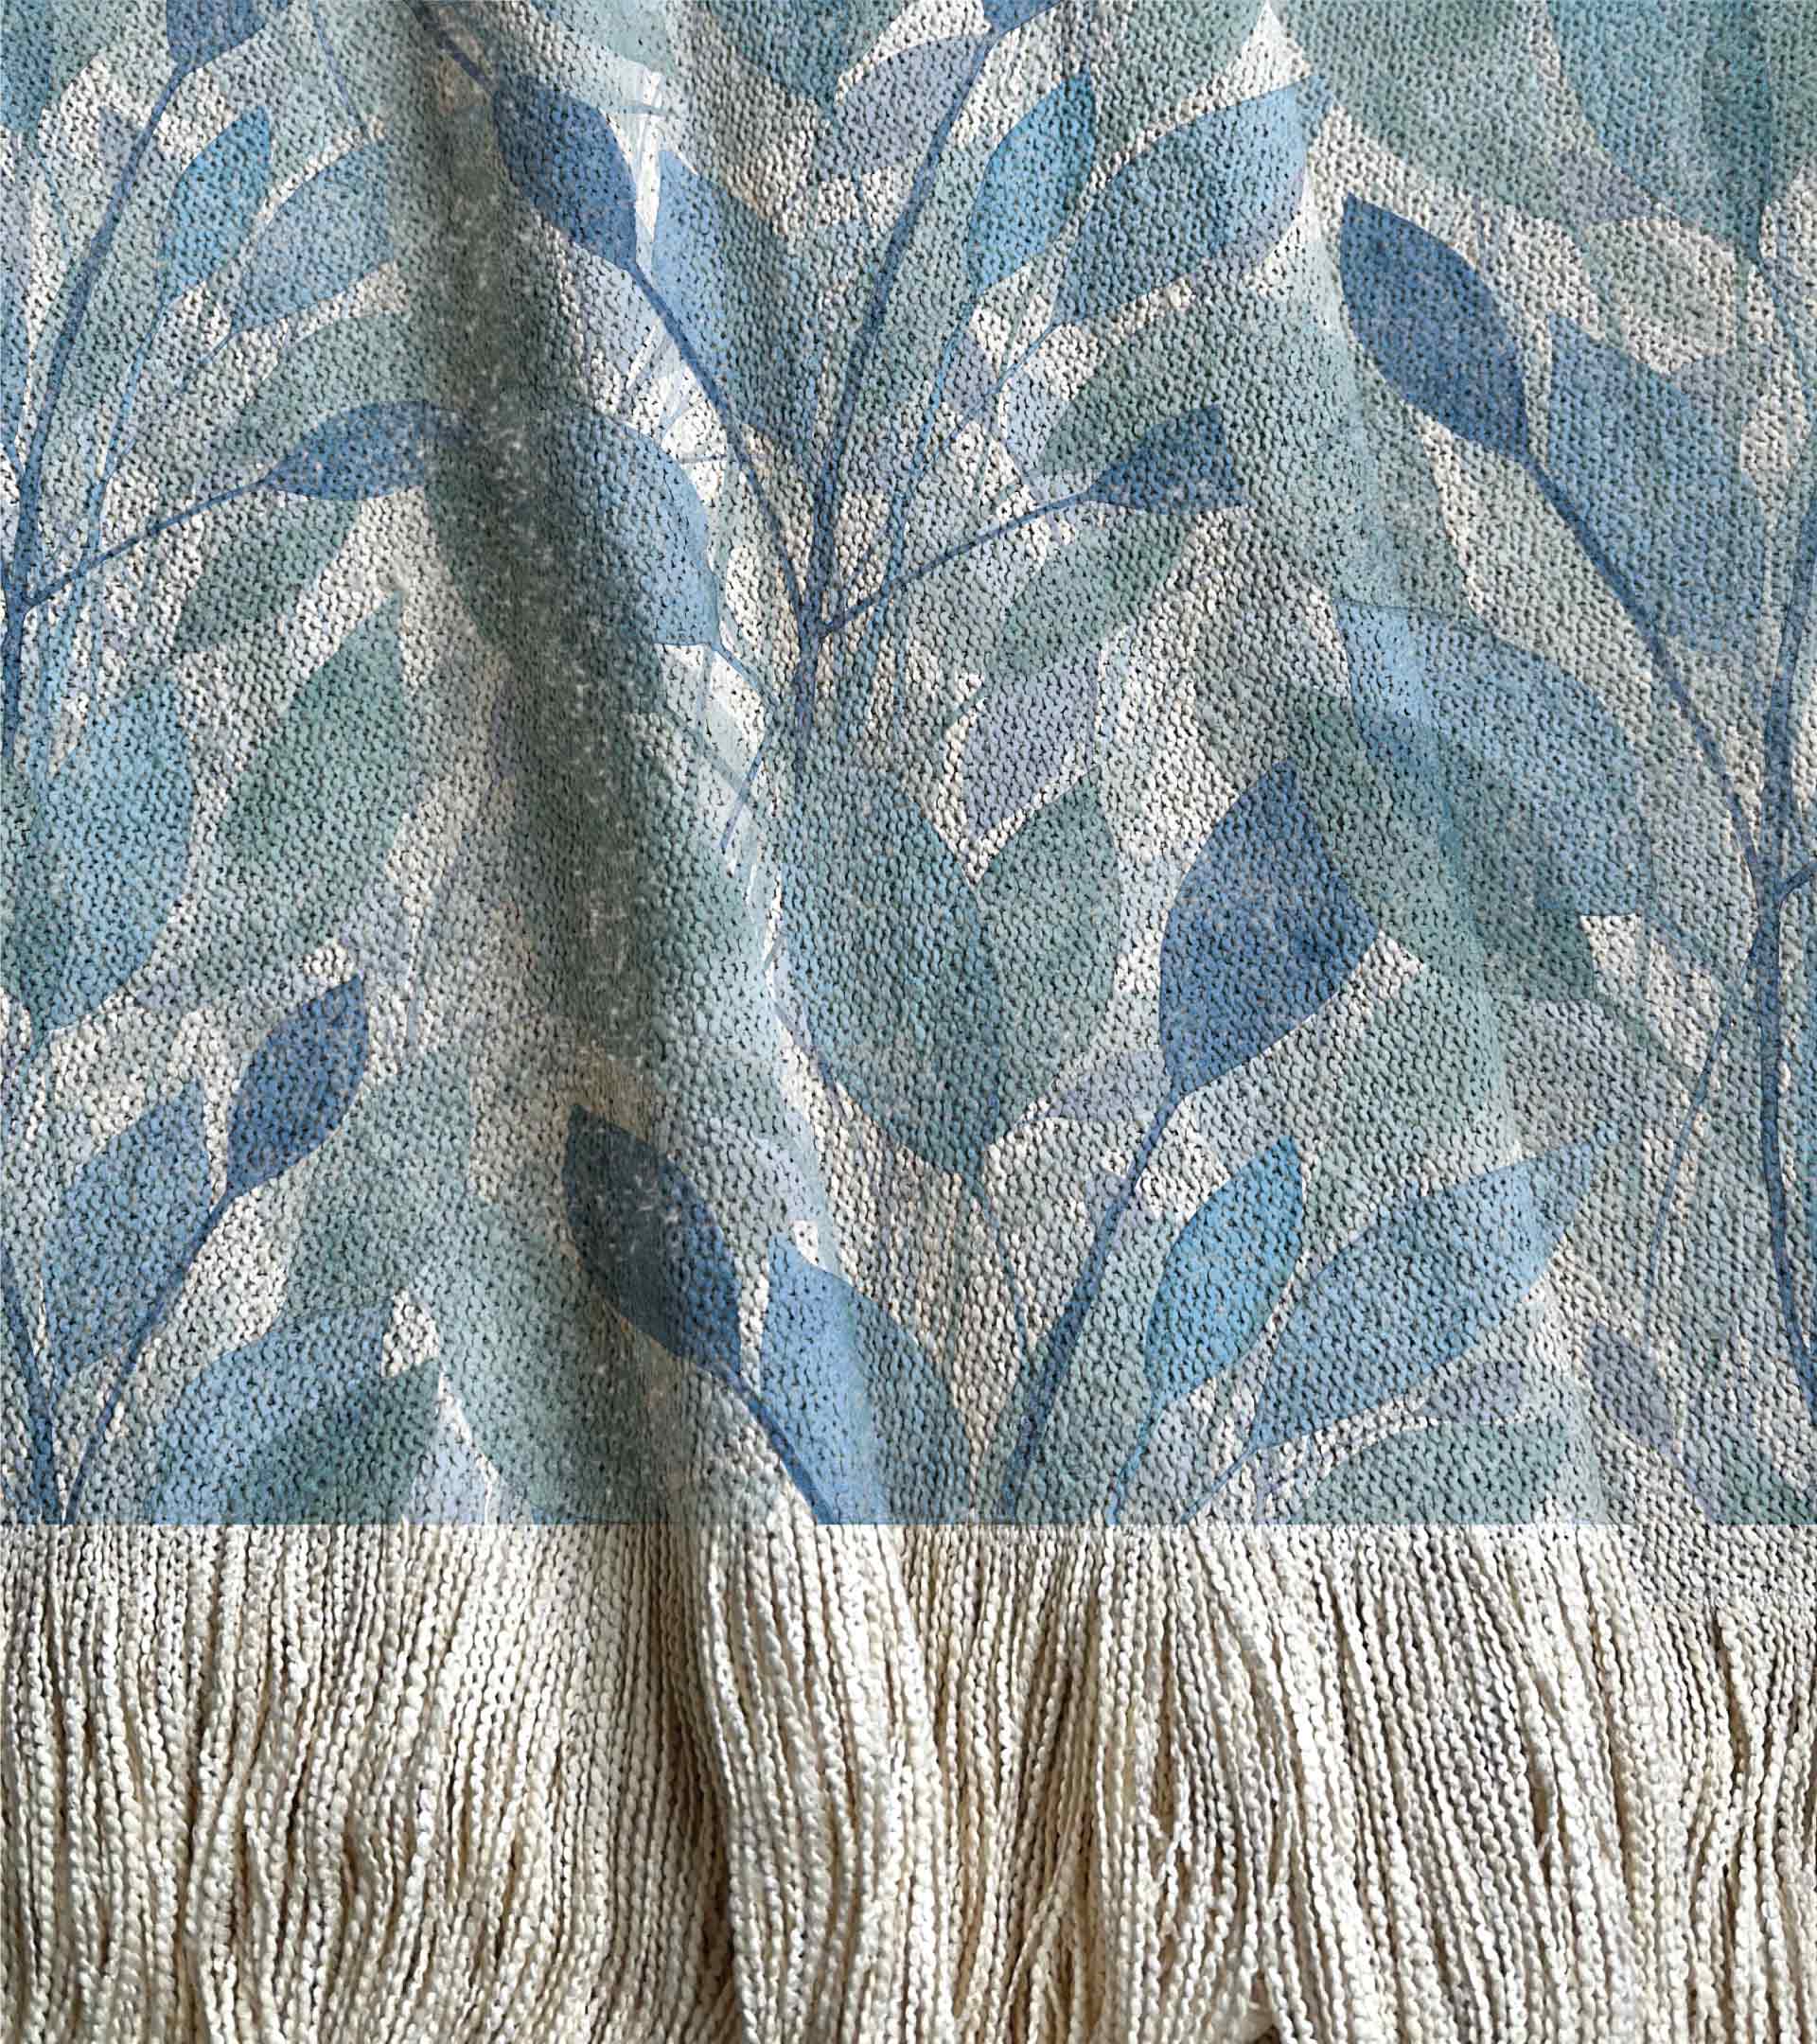 Manta tejida, diseño botanico con hojas grandes en acuarela, de color azul y celeste